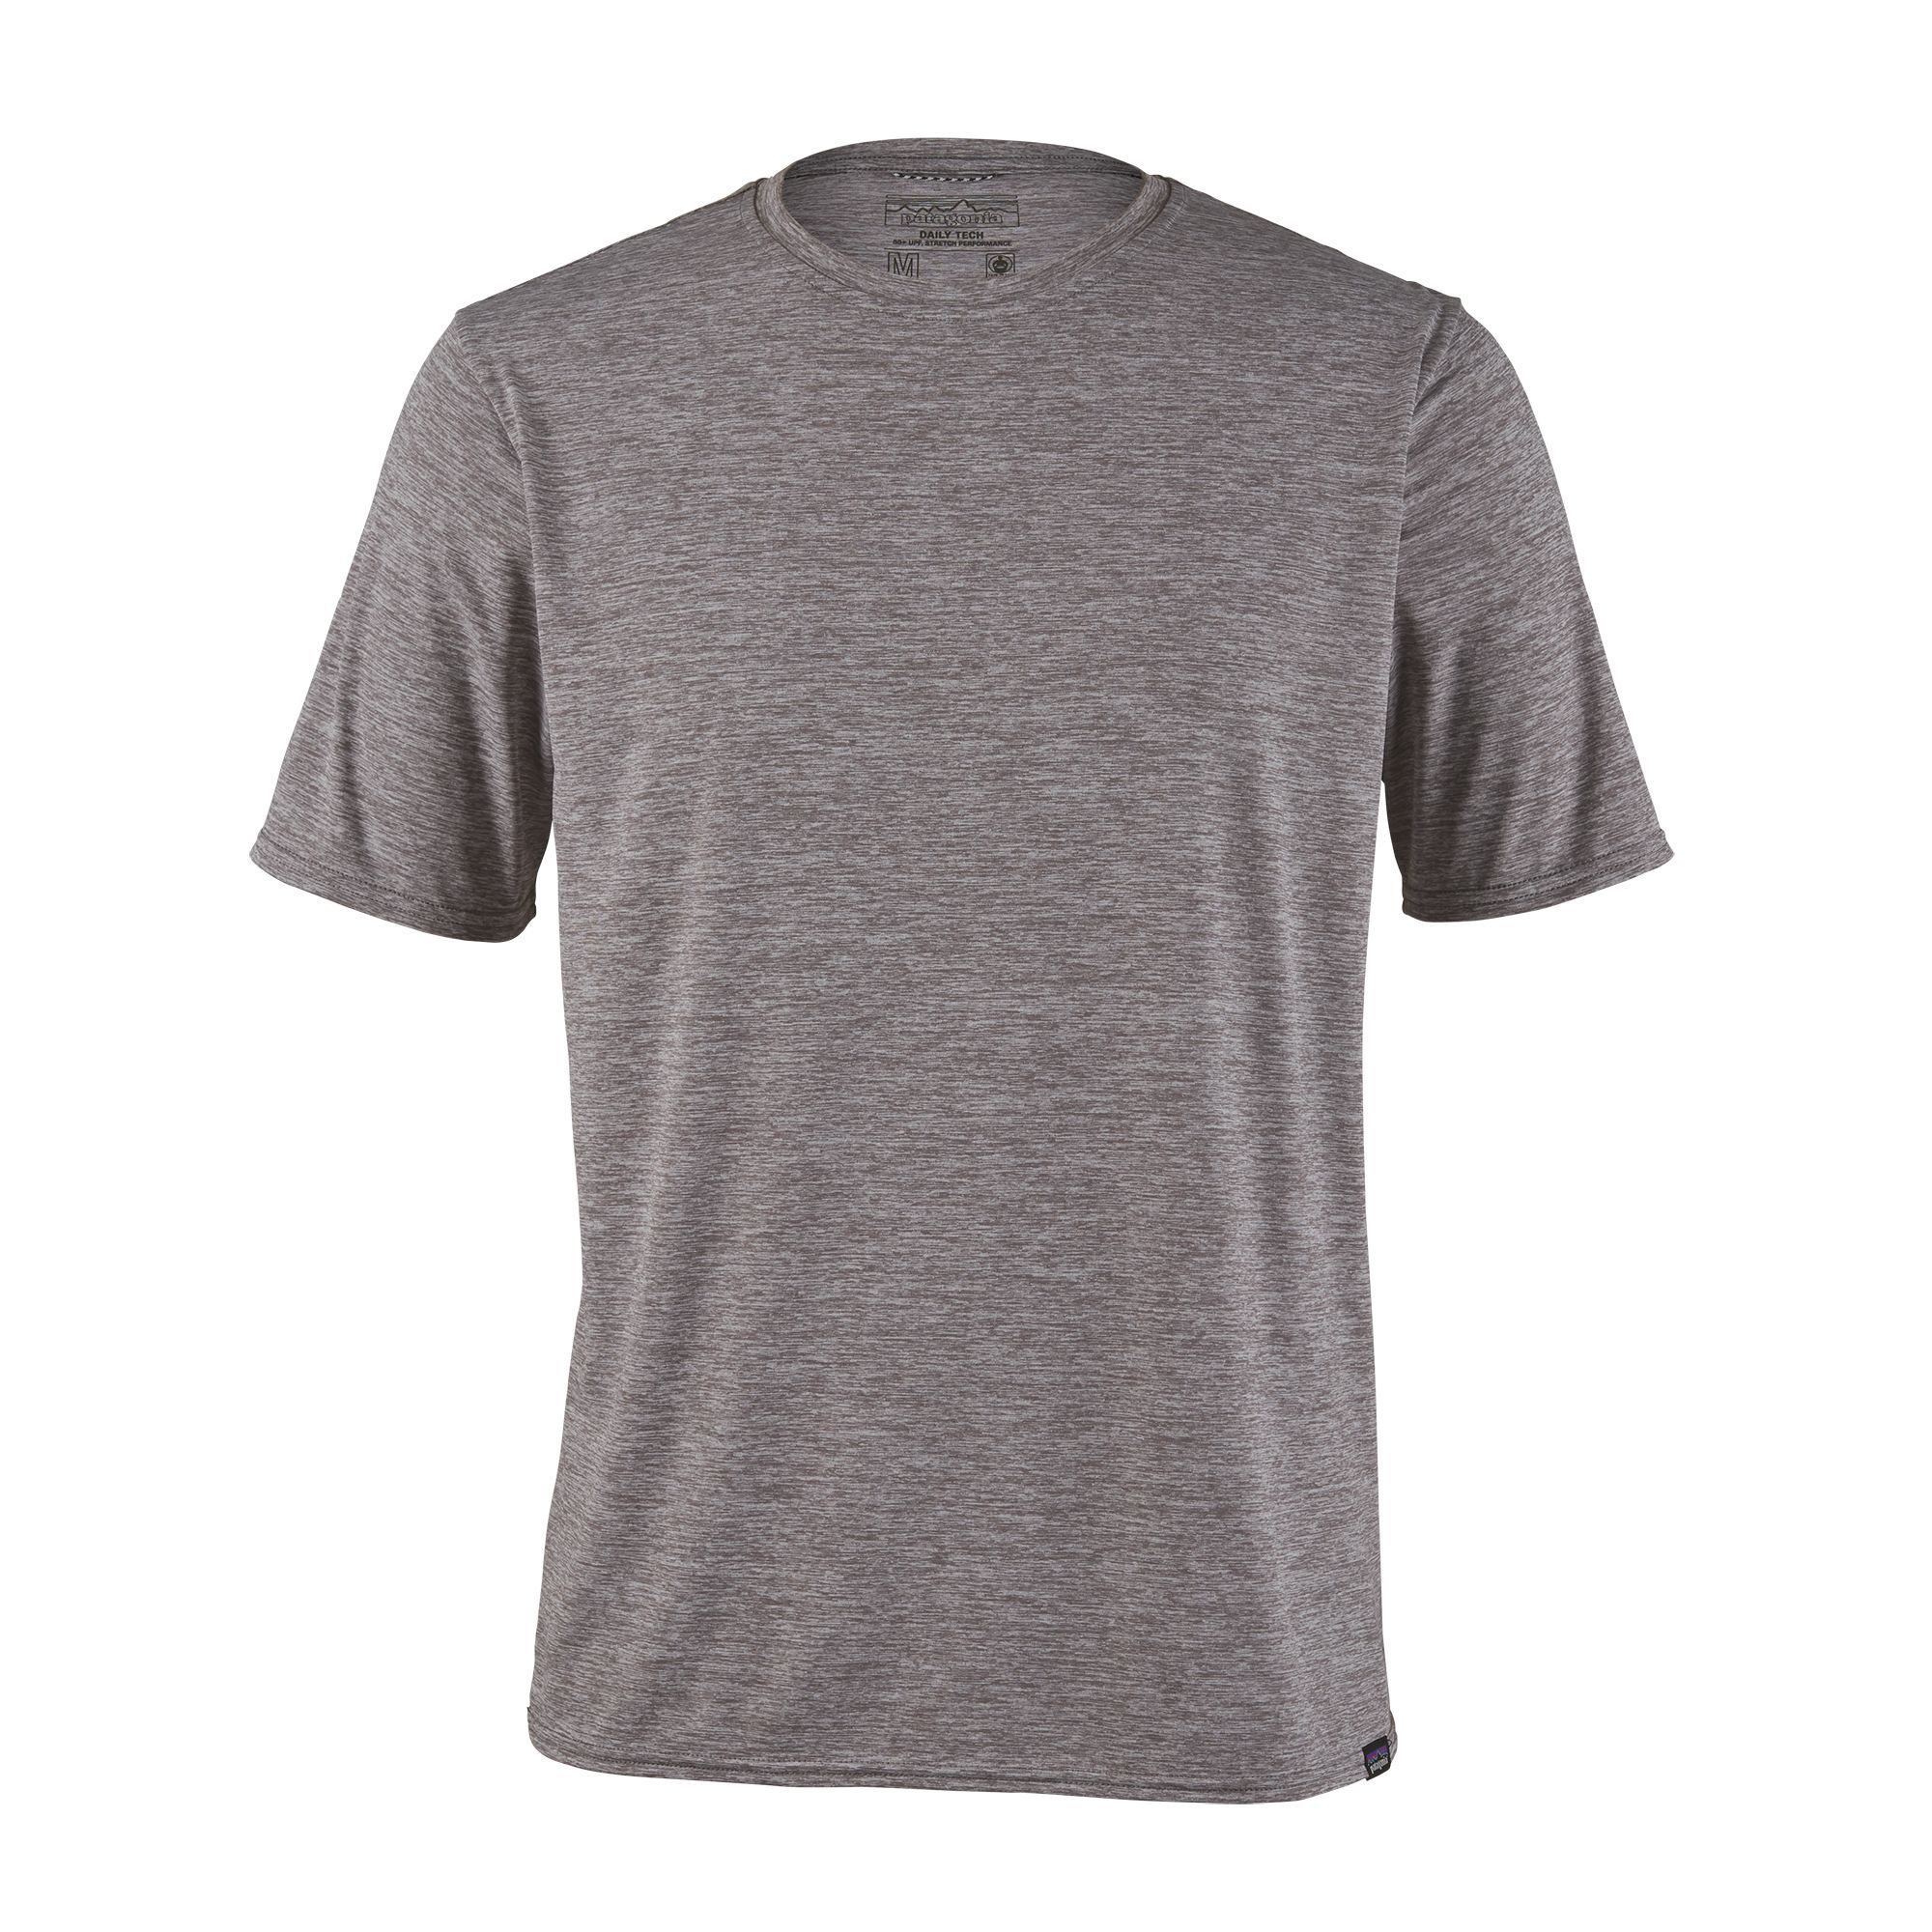 T-shirt Men's Capilene Cool Daily Shirt gris